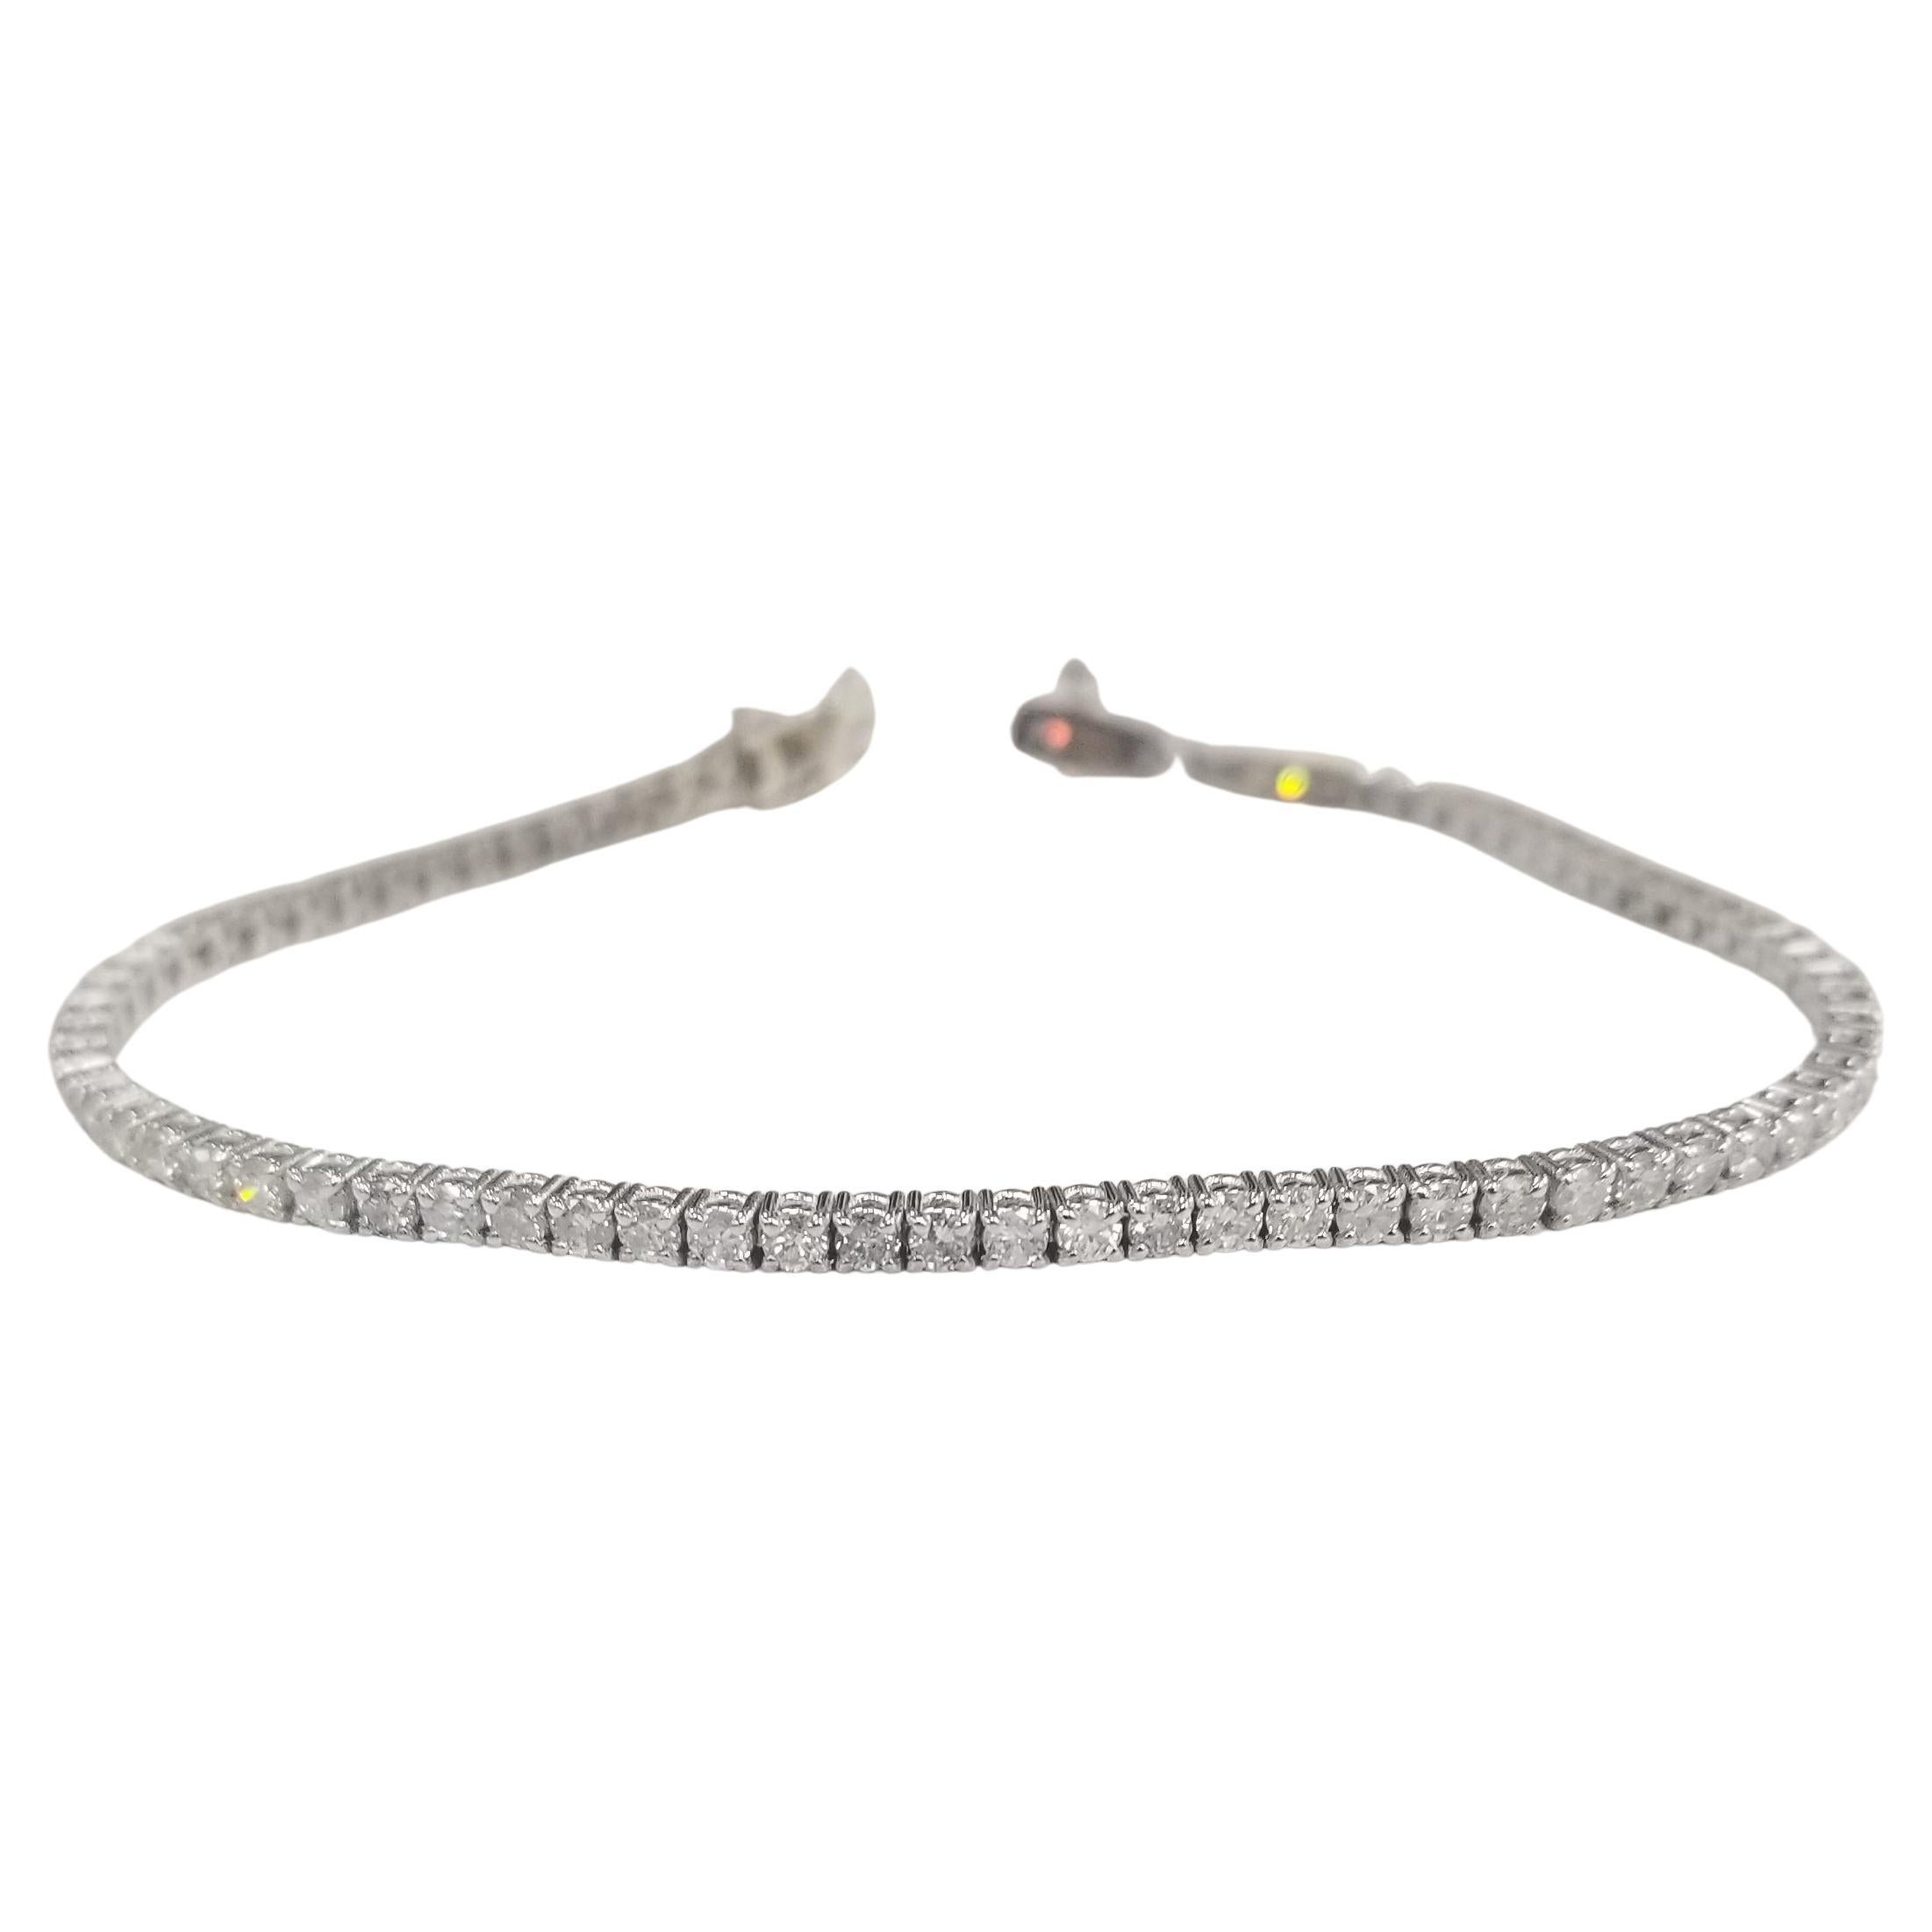 14k White Gold Diamond "Tennis" Bracelet Weighing 3.00 Carats